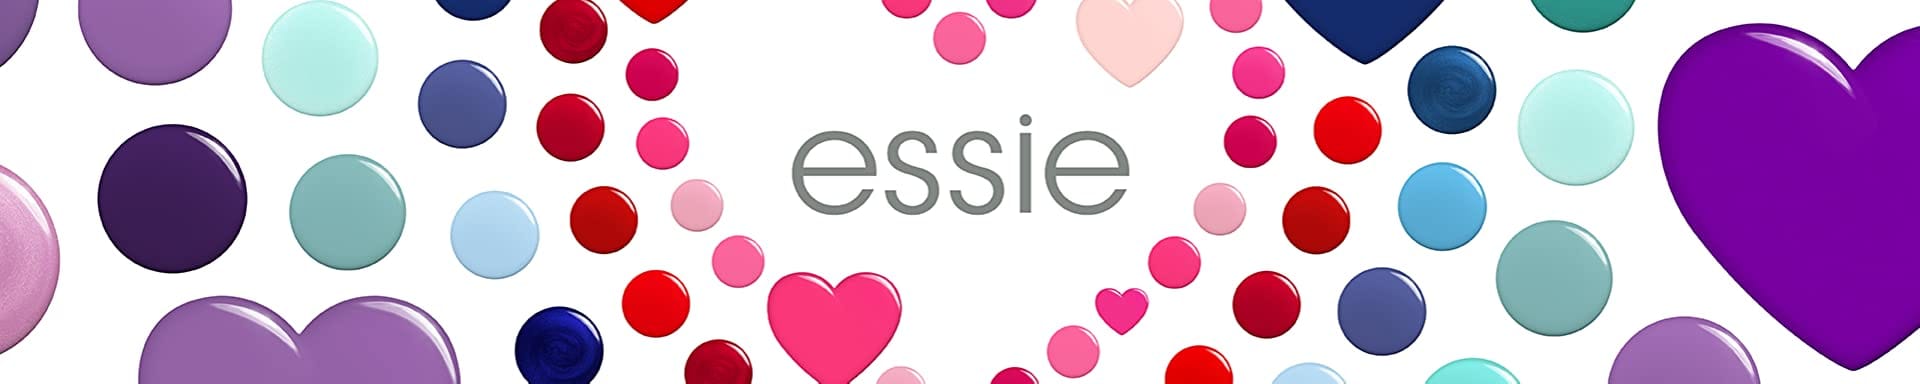 Essie Brand Page